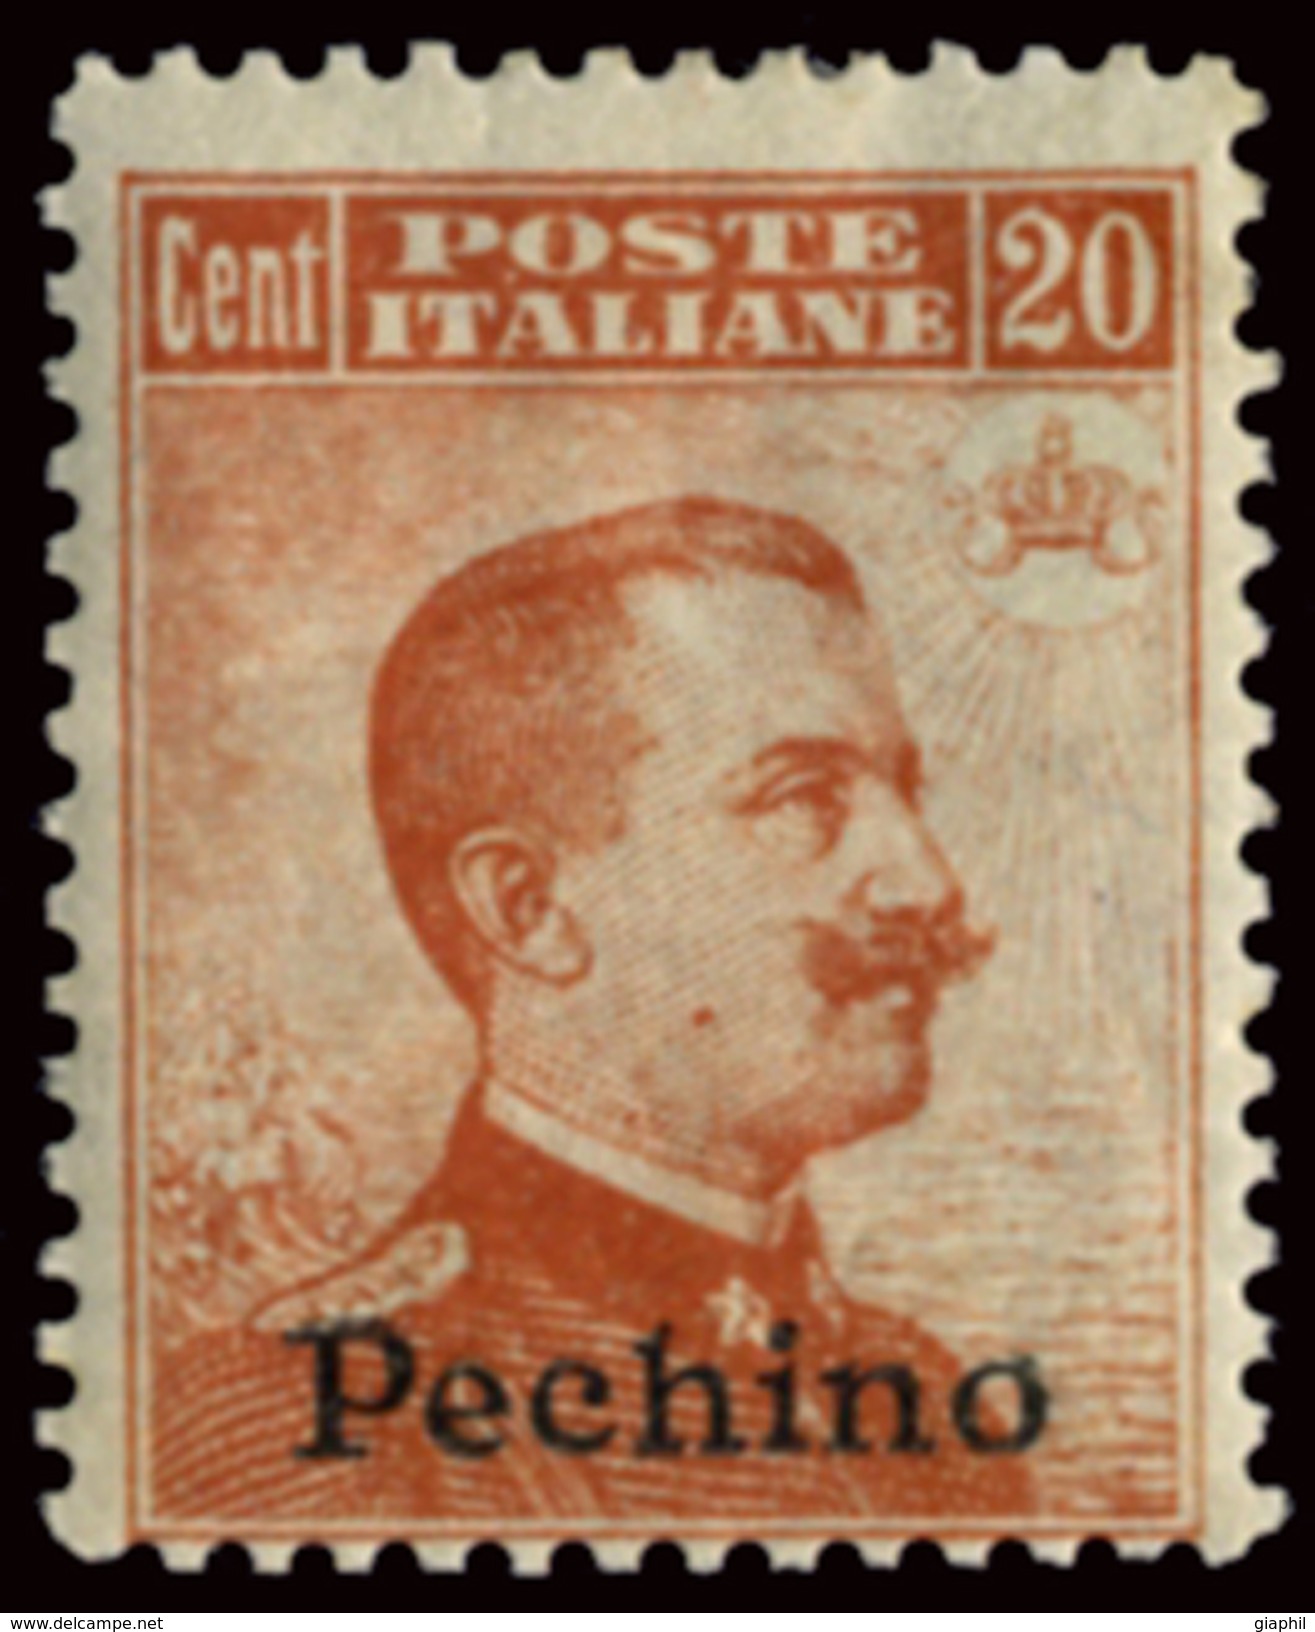 ITALY ITALIA BEIJING PECHINO 1917 20 CENT. (Sass. 12) NUOVO LINGUELLATO OFFERTA! - Pékin